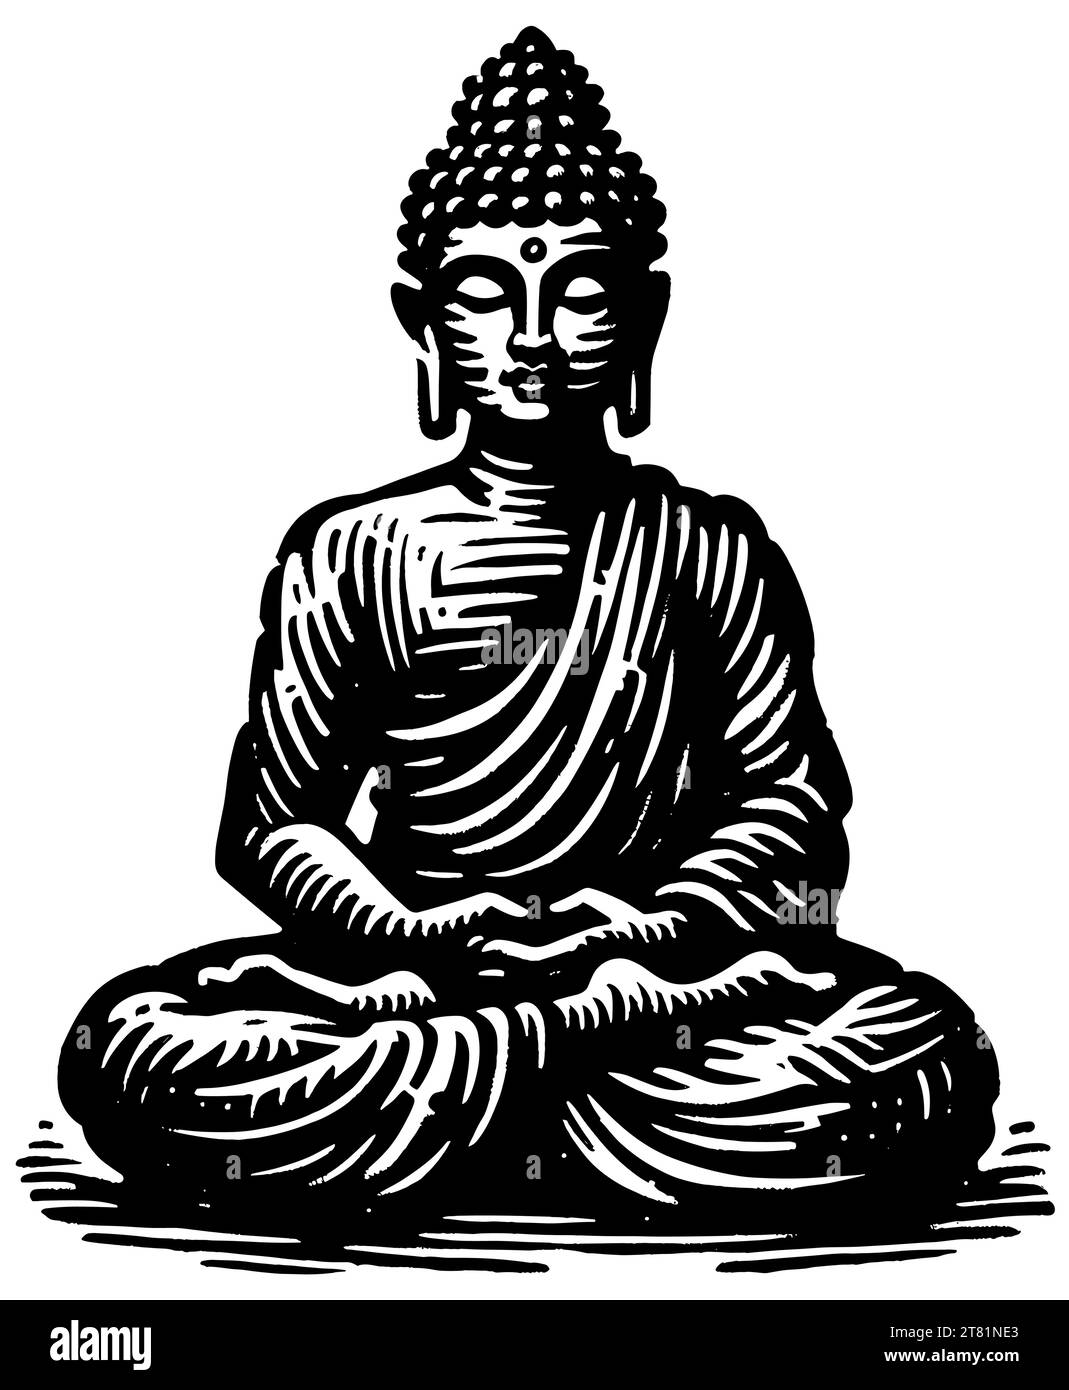 Figure de Bouddha méditant en position lotus, gravure sur bois sereine noir et blanc. Illustration de Vecteur